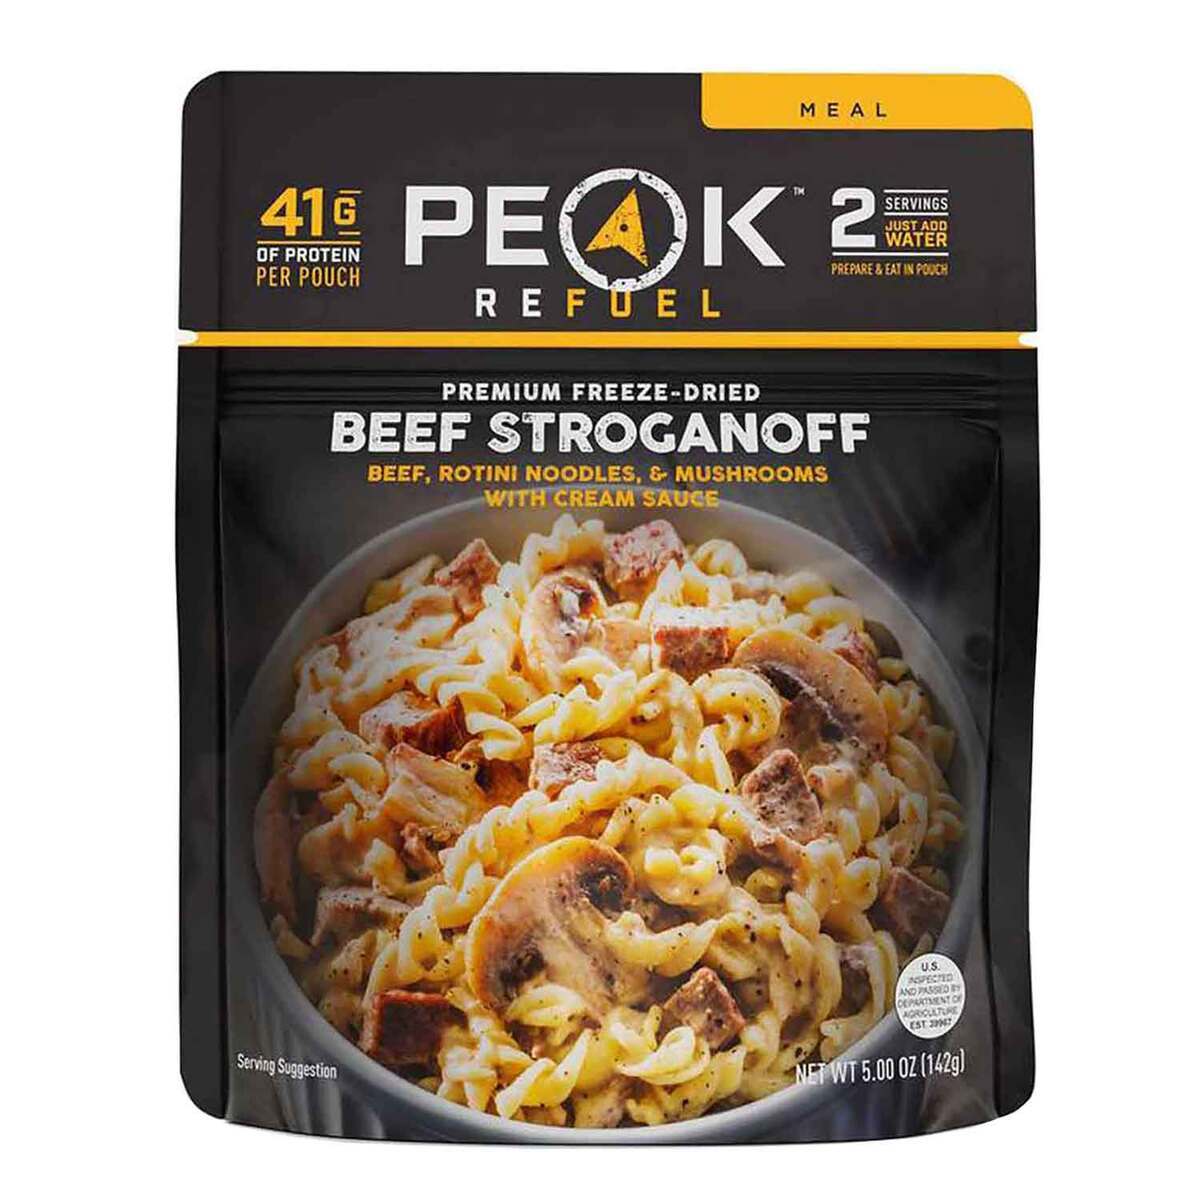 peak-refuel-beef-stroganoff-front